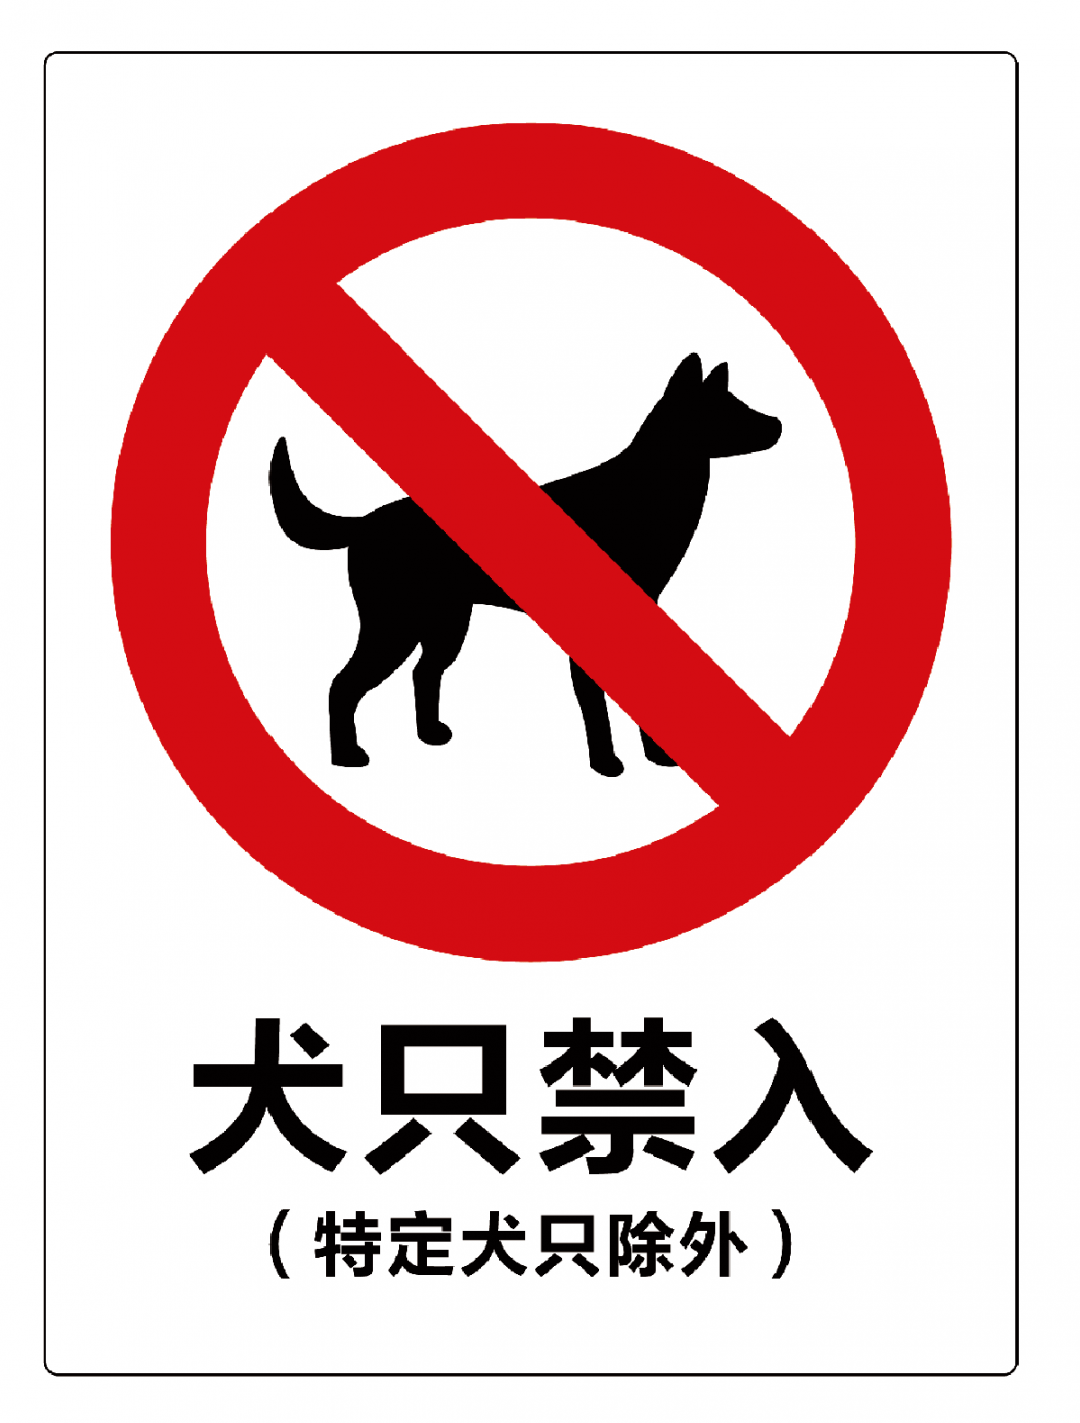 今后在城区餐饮,商场 宾馆,农贸市场等公共场所 将会张贴犬只禁入